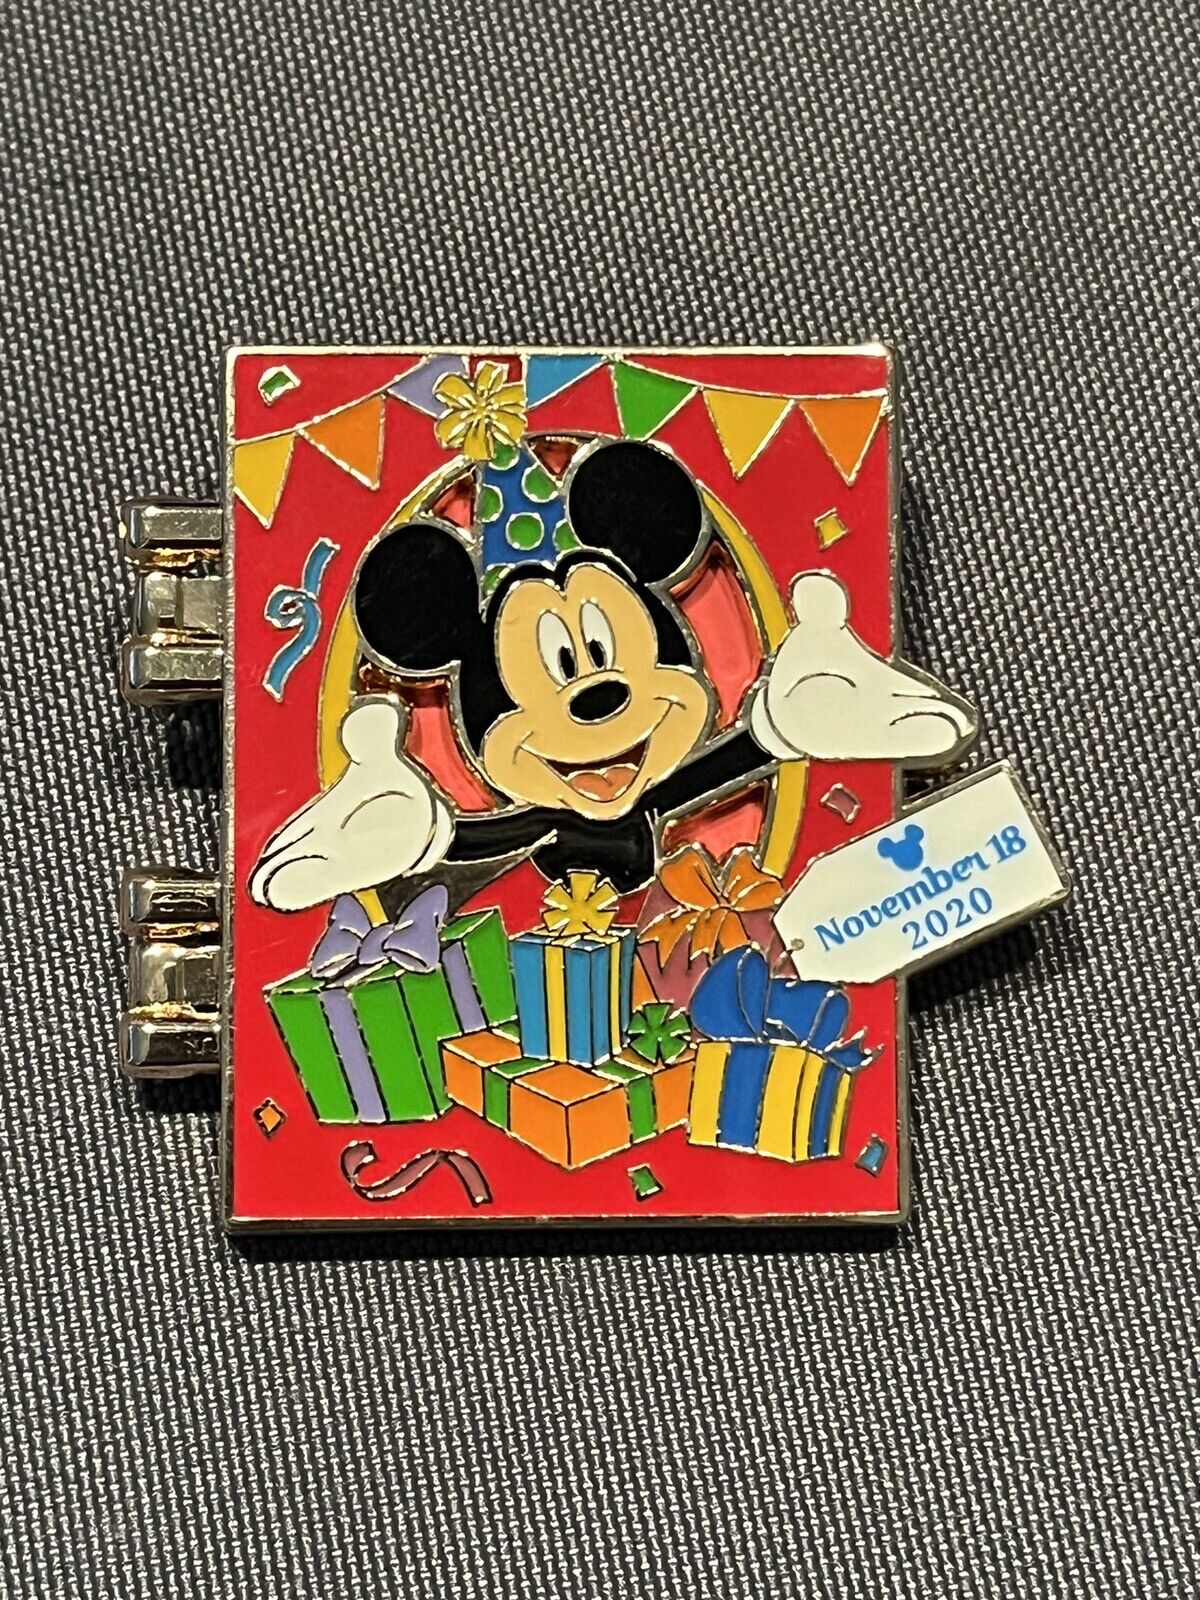 Disney pins HKDL Hong Kong Disneyland Mickey Mouse Happy Birthday 2020 Pin LE600